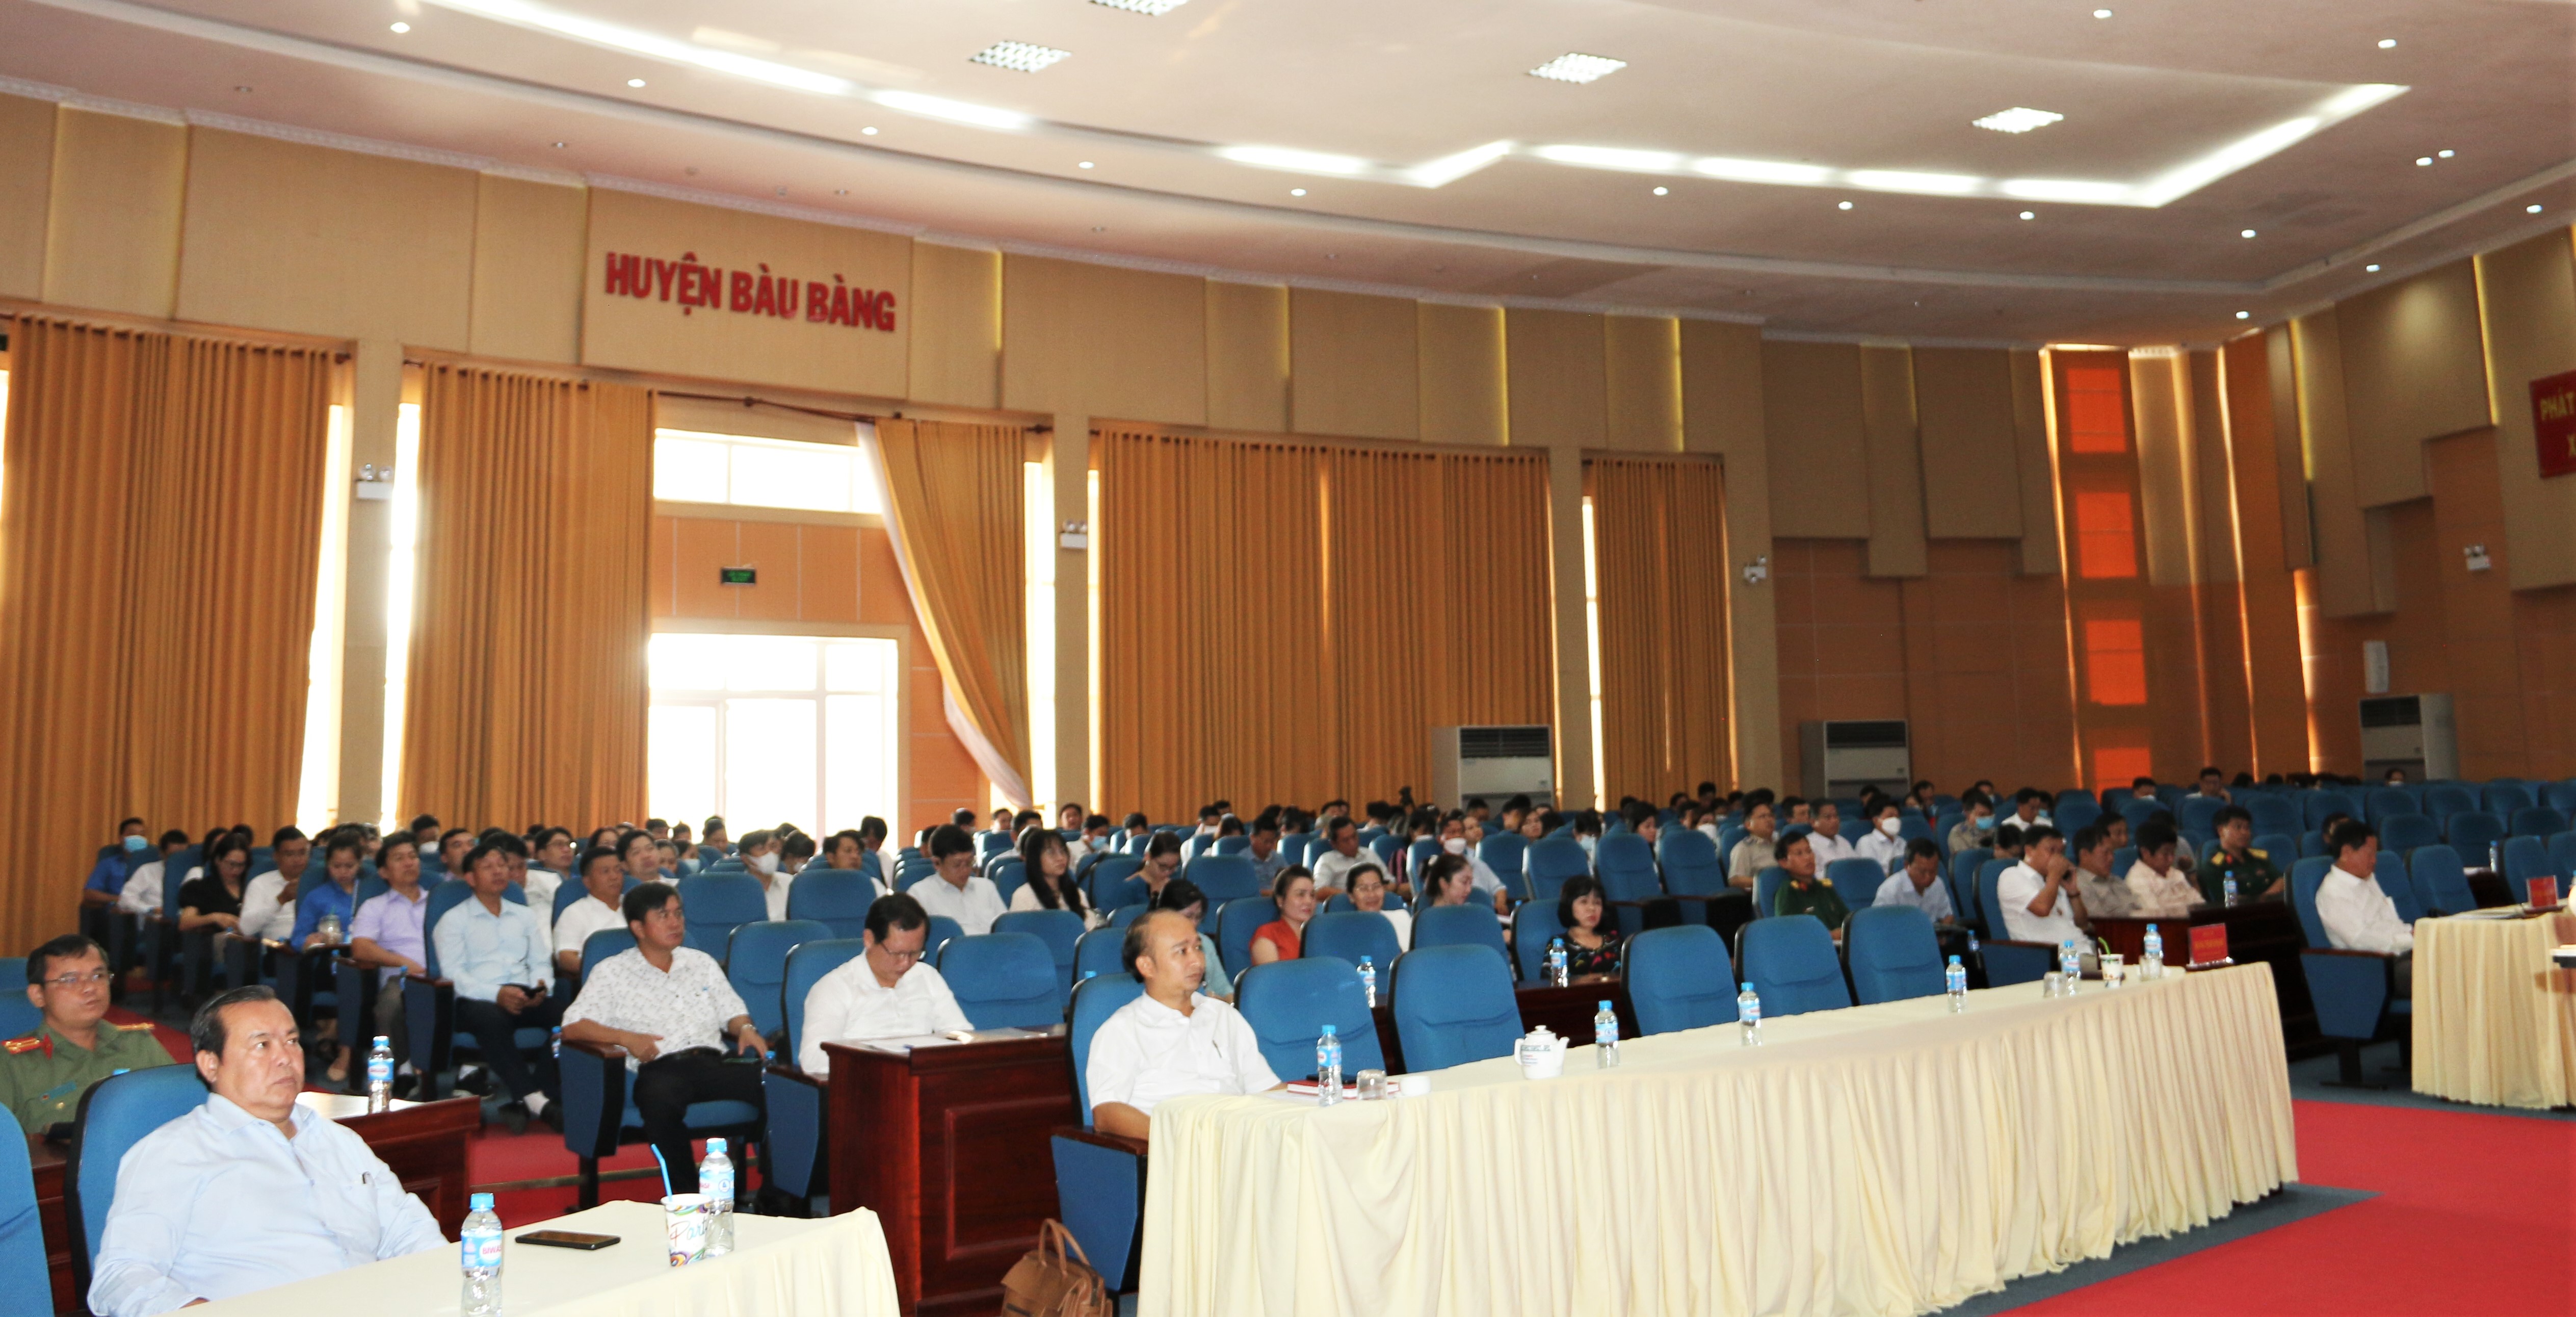 Các đại biểu tham dự Hội nghị tại điểm cầu hội trường huyện. Hoàng Tú